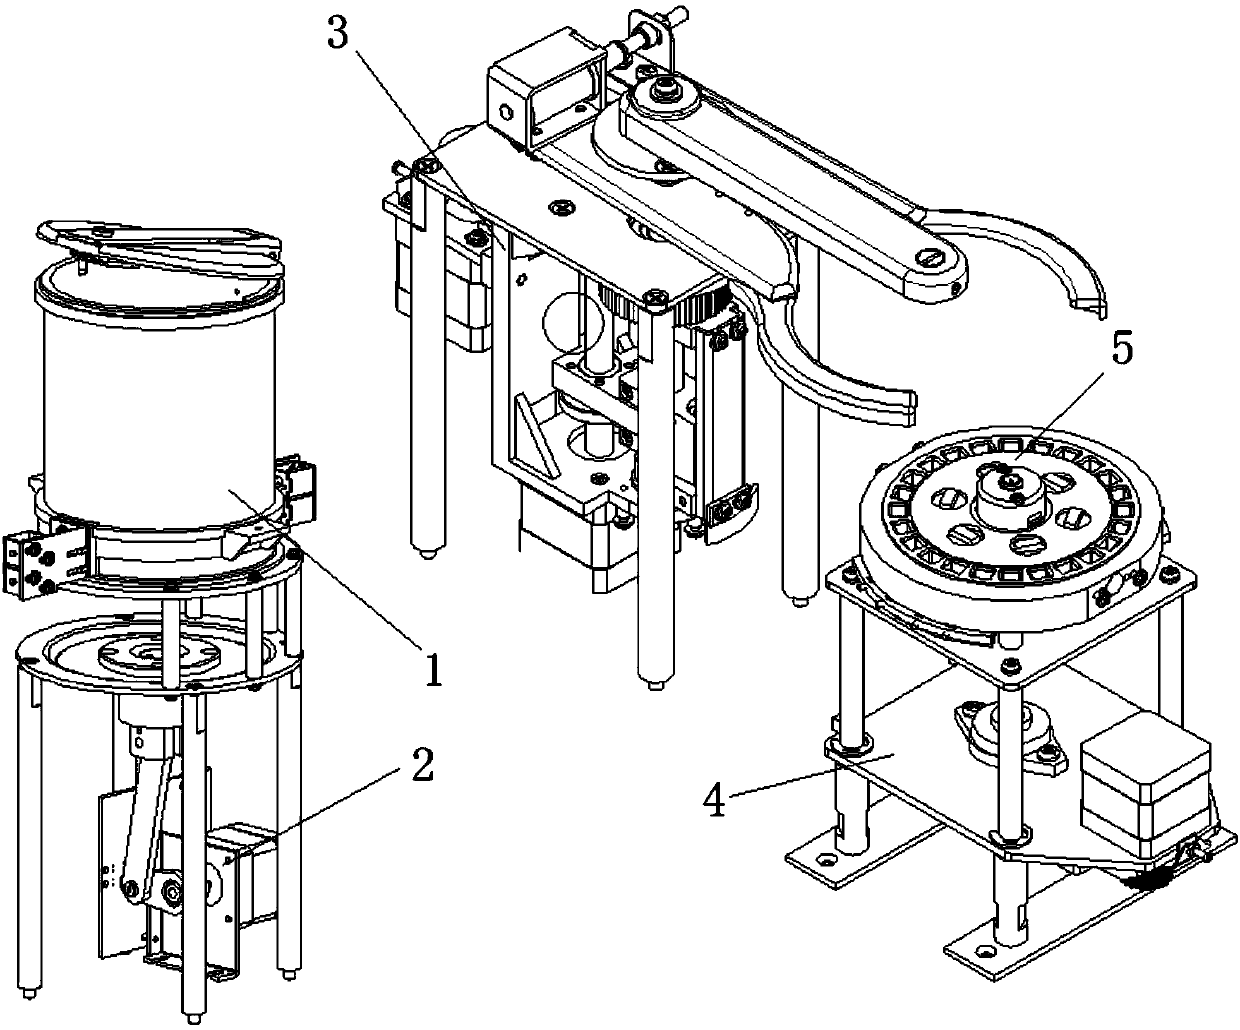 Automatic loading mechanism of fully automatic coagulation analyzer